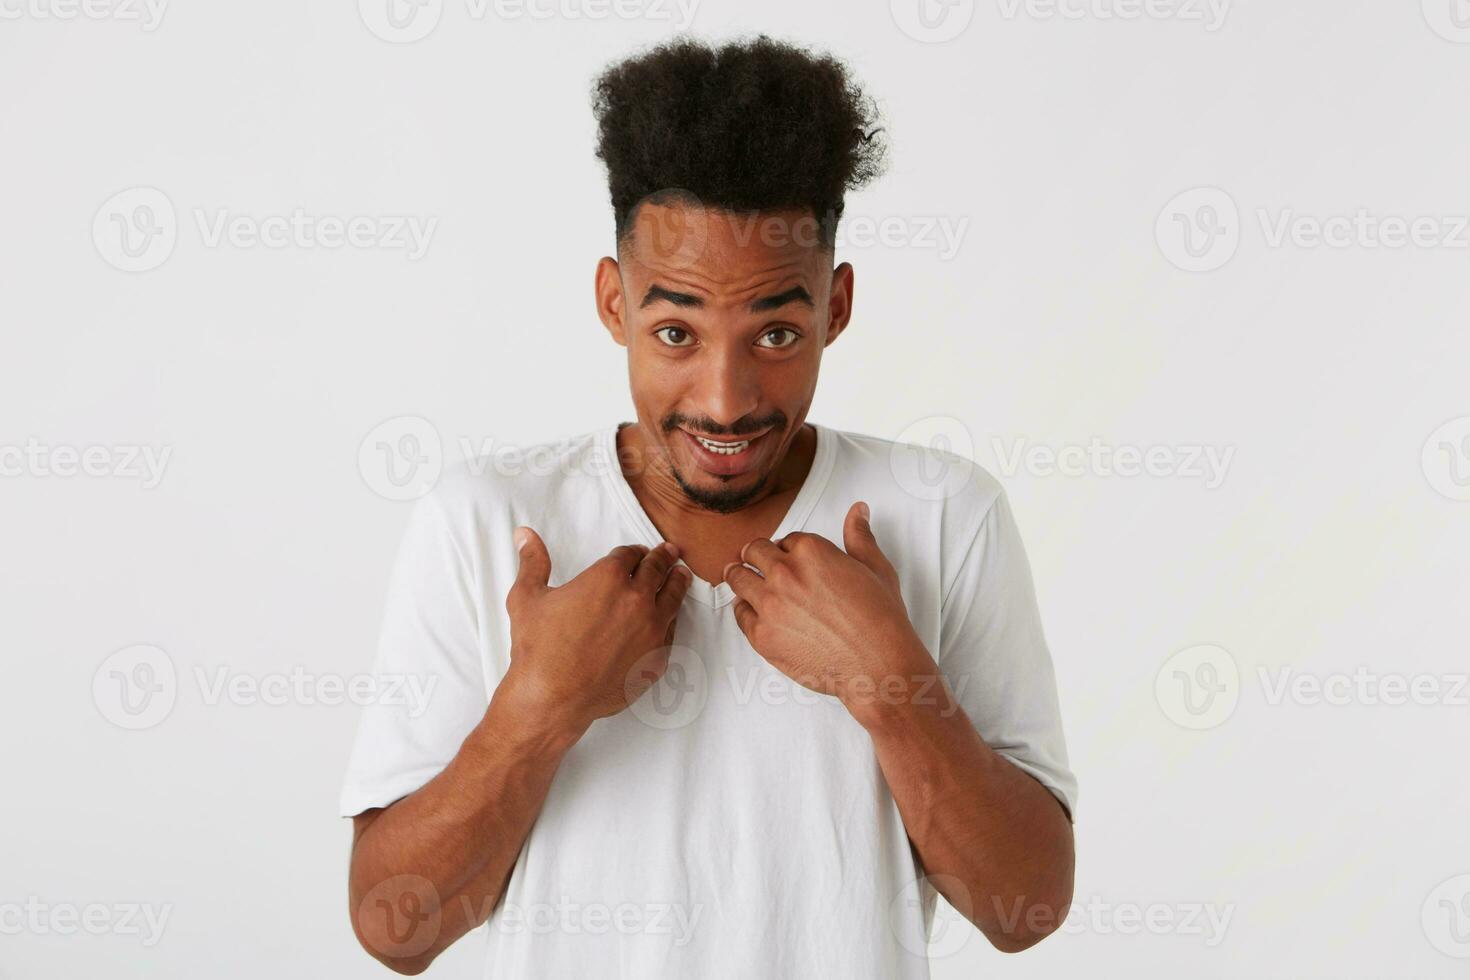 retrato do sorridente confuso africano americano jovem homem com afro Penteado foto